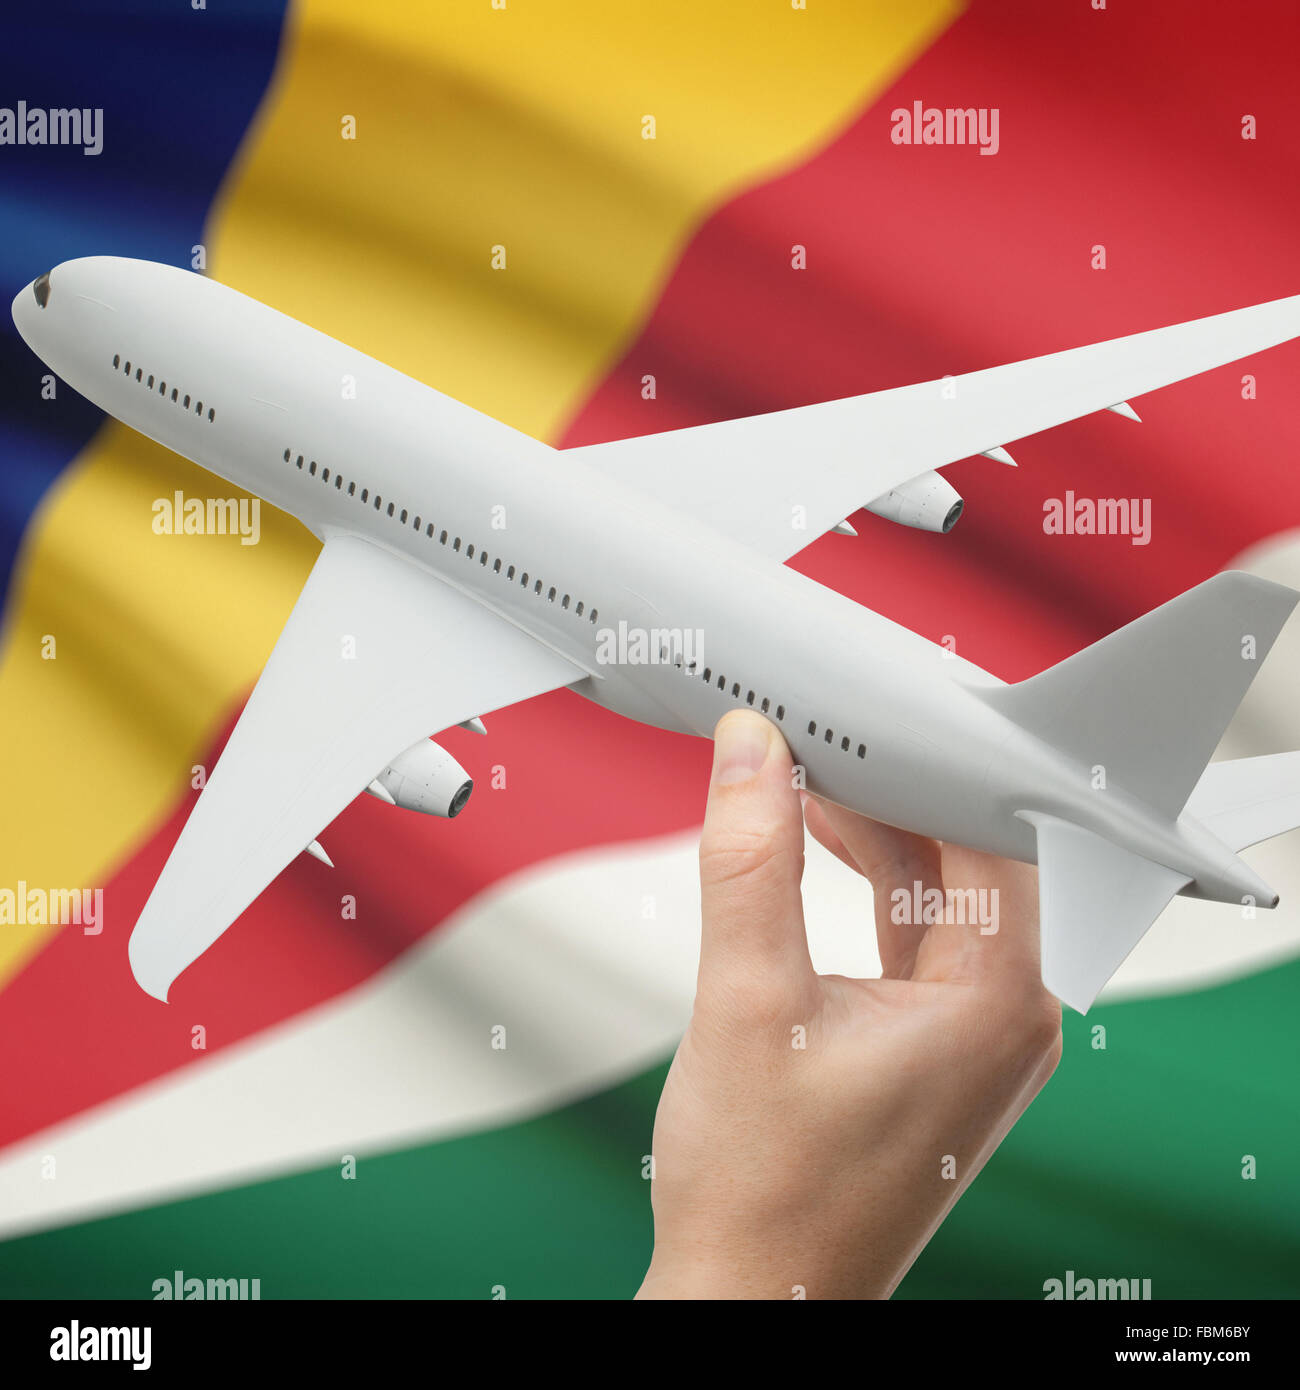 Avion en main avec drapeau national sur fond de série - Seychelles Banque D'Images